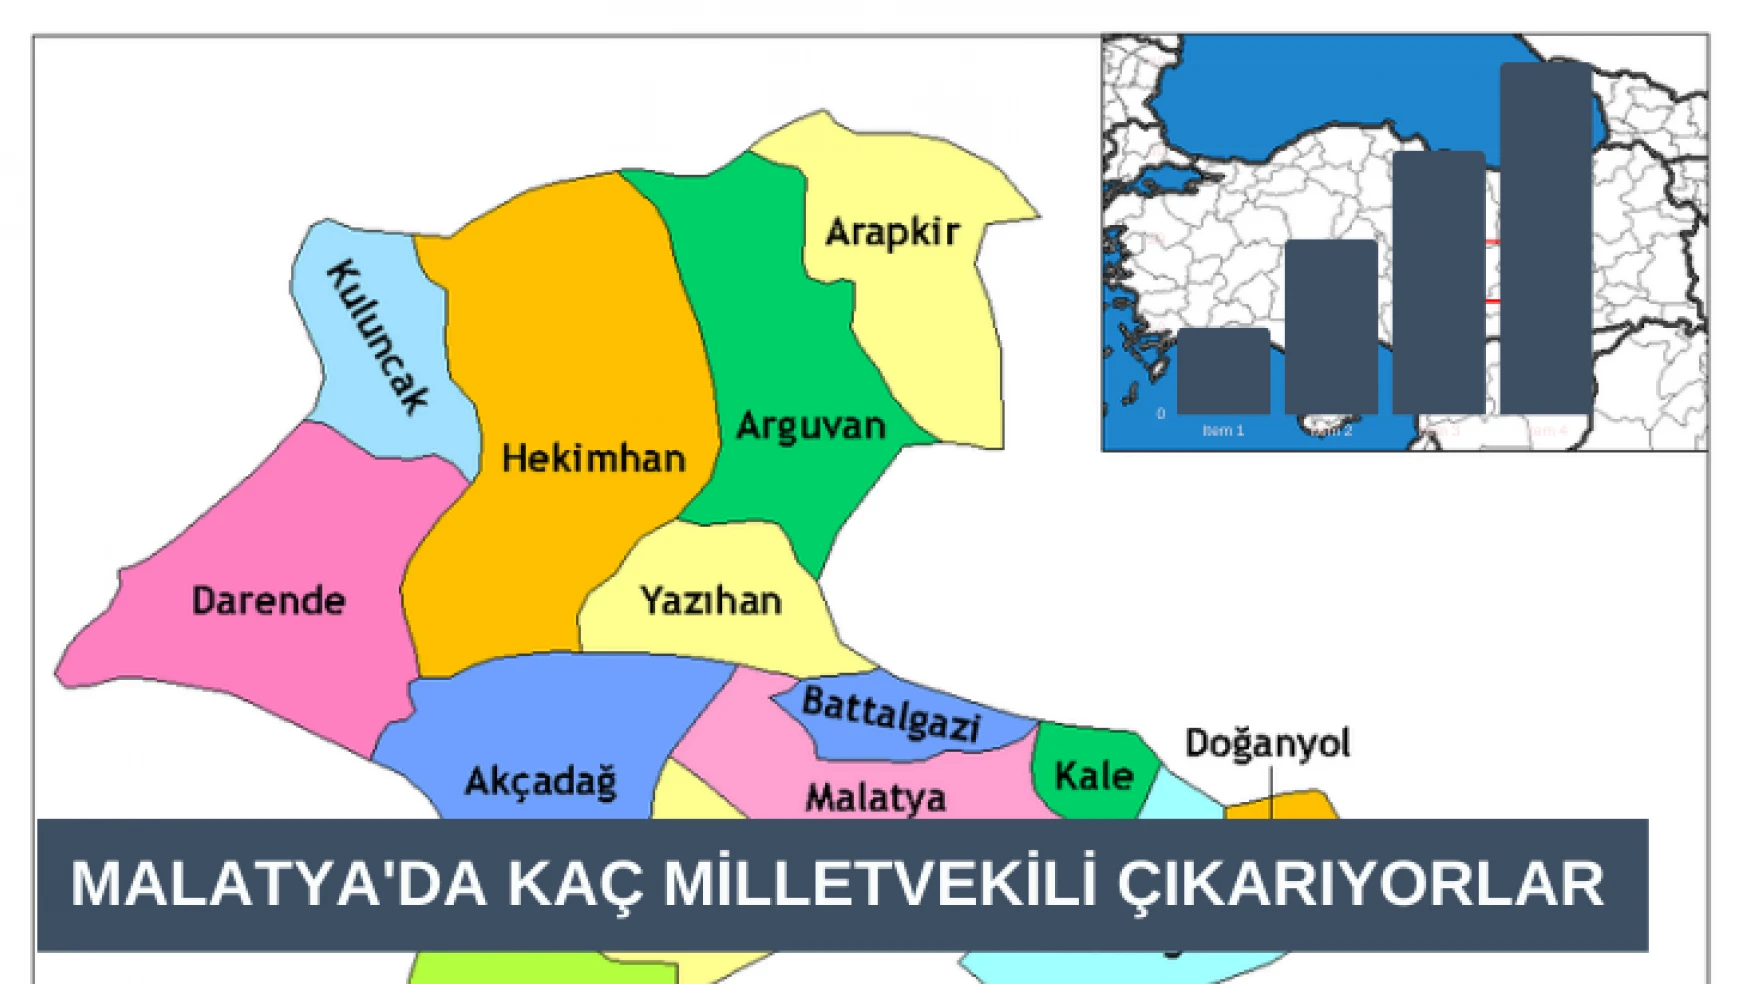 Malatya'da hangi parti kaç milletvekili çıkarıyor?